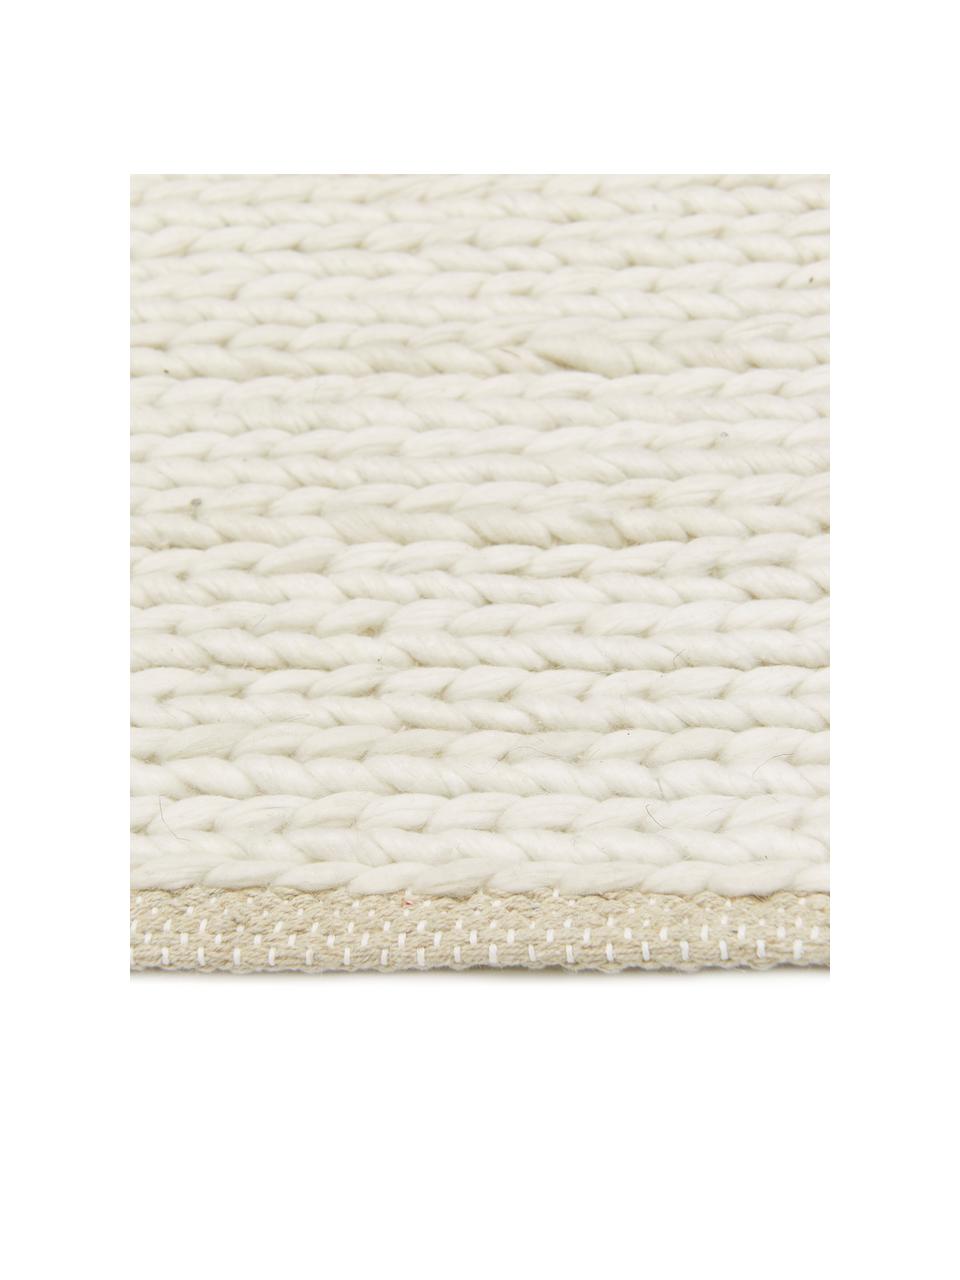 Tapis en laine tissé main Uno, Crème, larg. 160 x long. 230 cm (taille M)